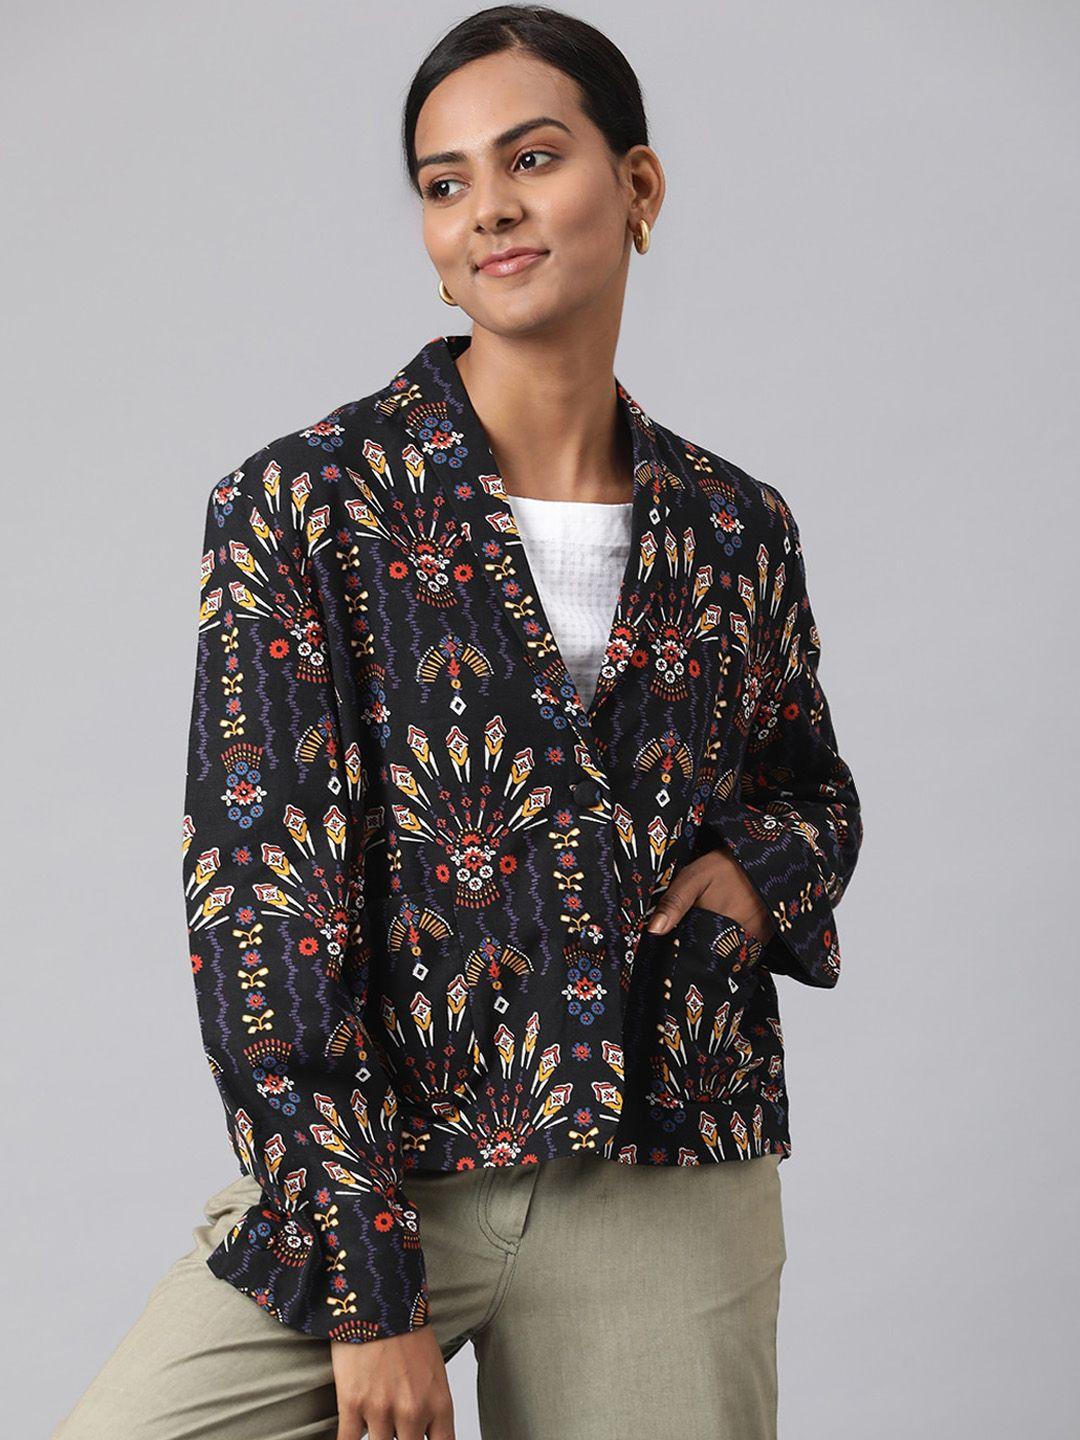 fabindia women black & brown printed tailored jacket